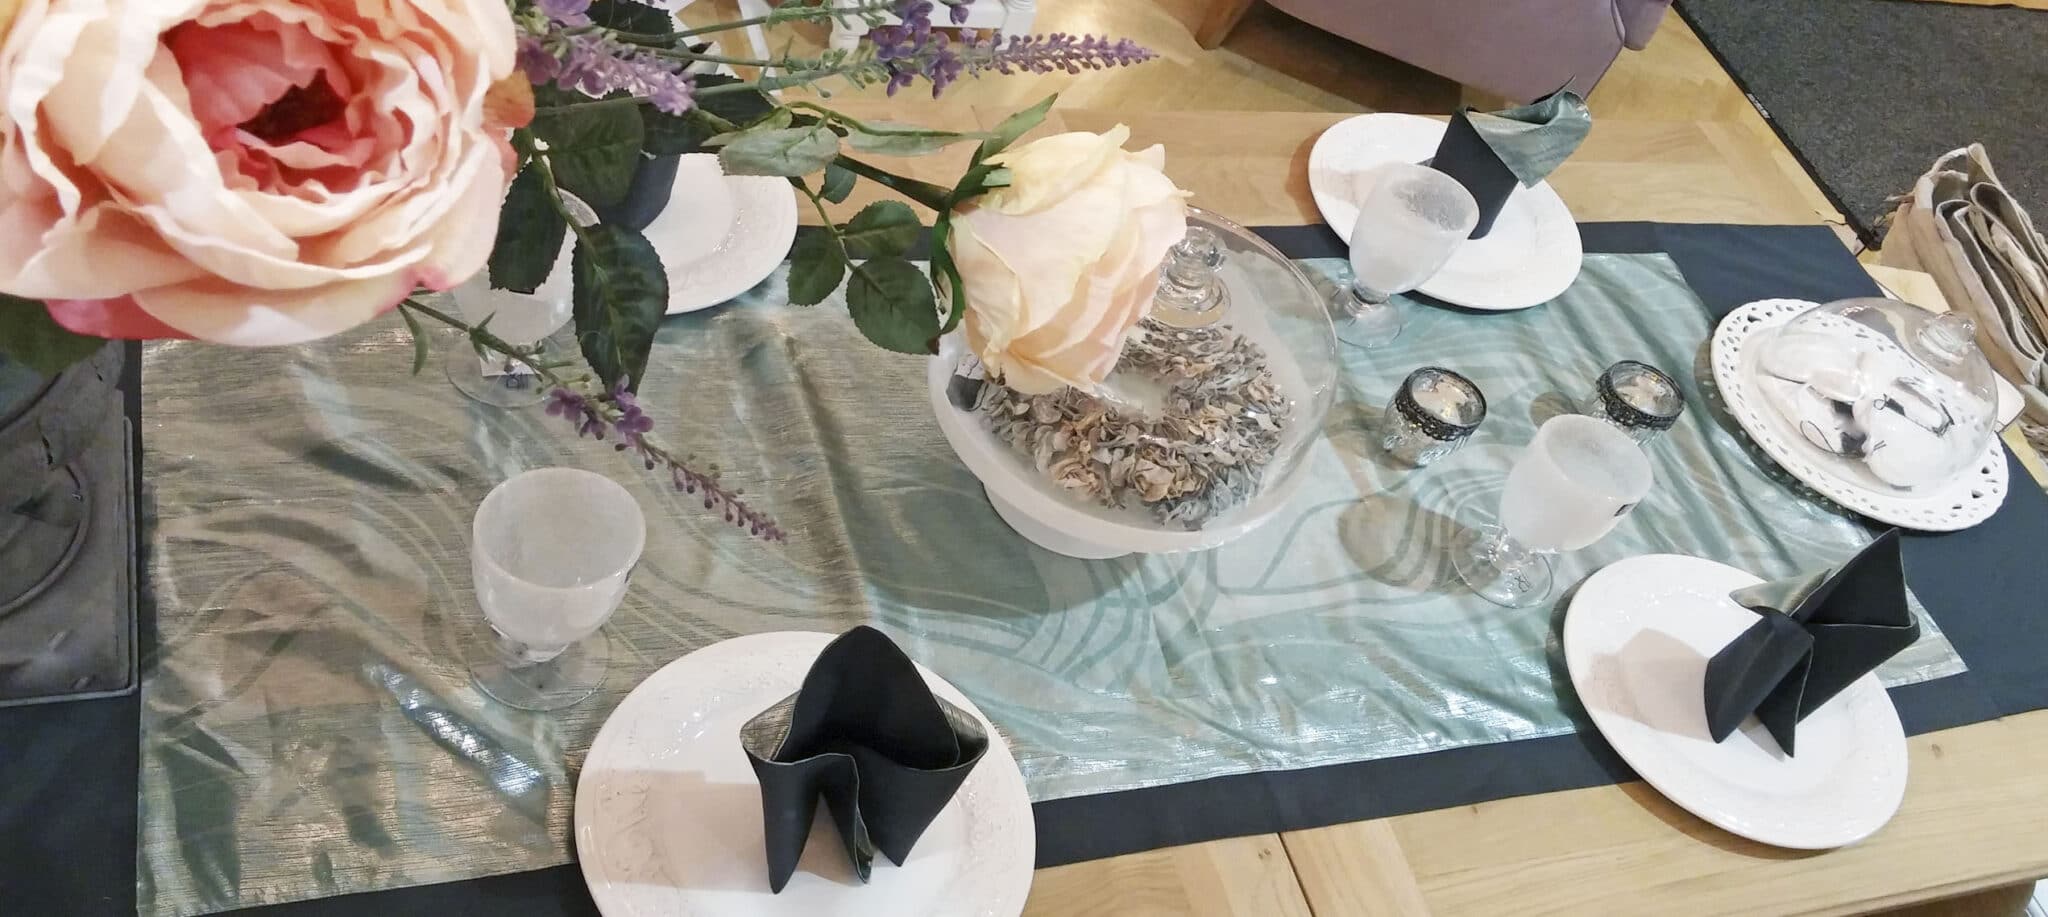 decorative-tablecloth-napkins